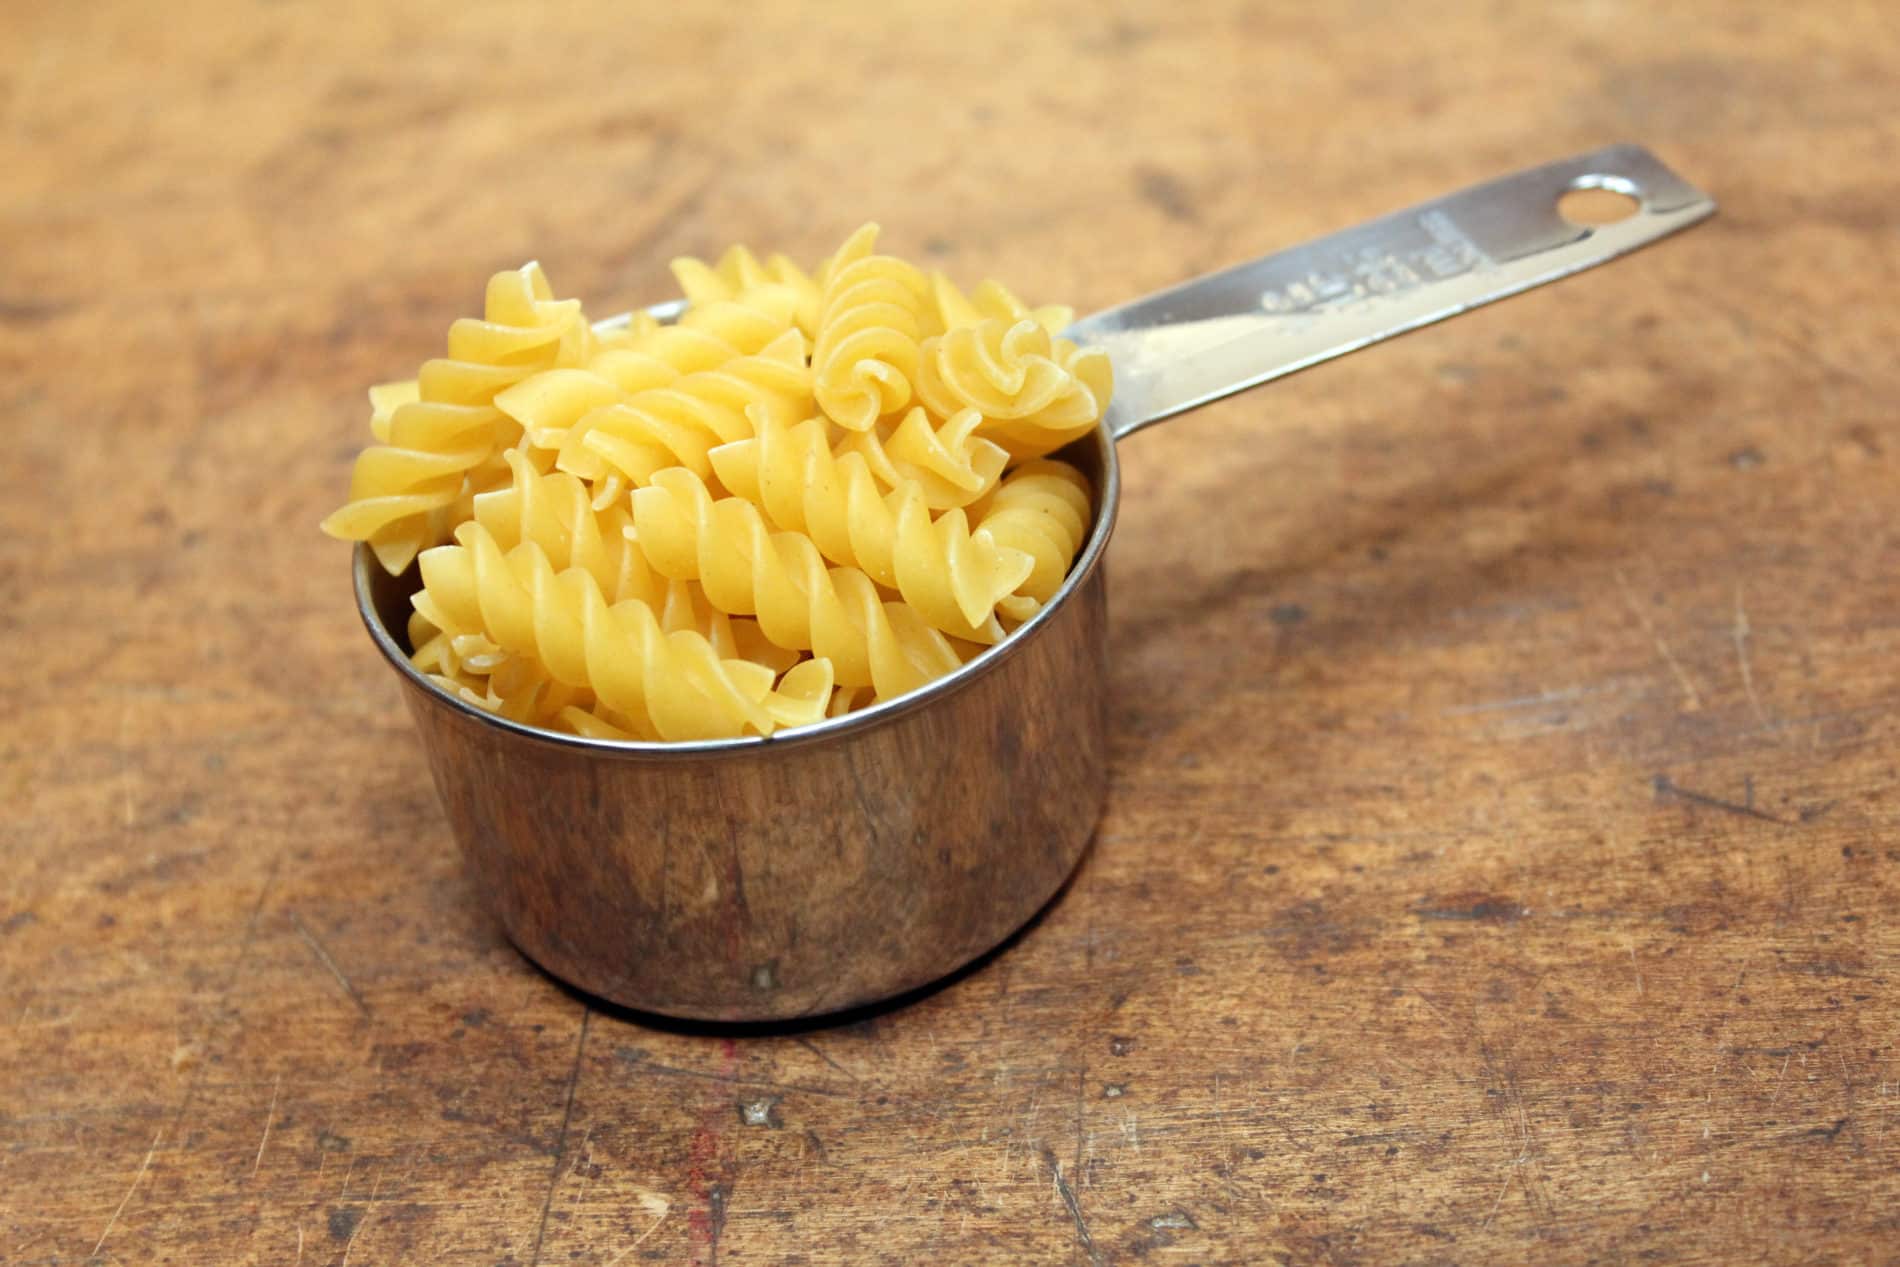 162 Grams of pasta.